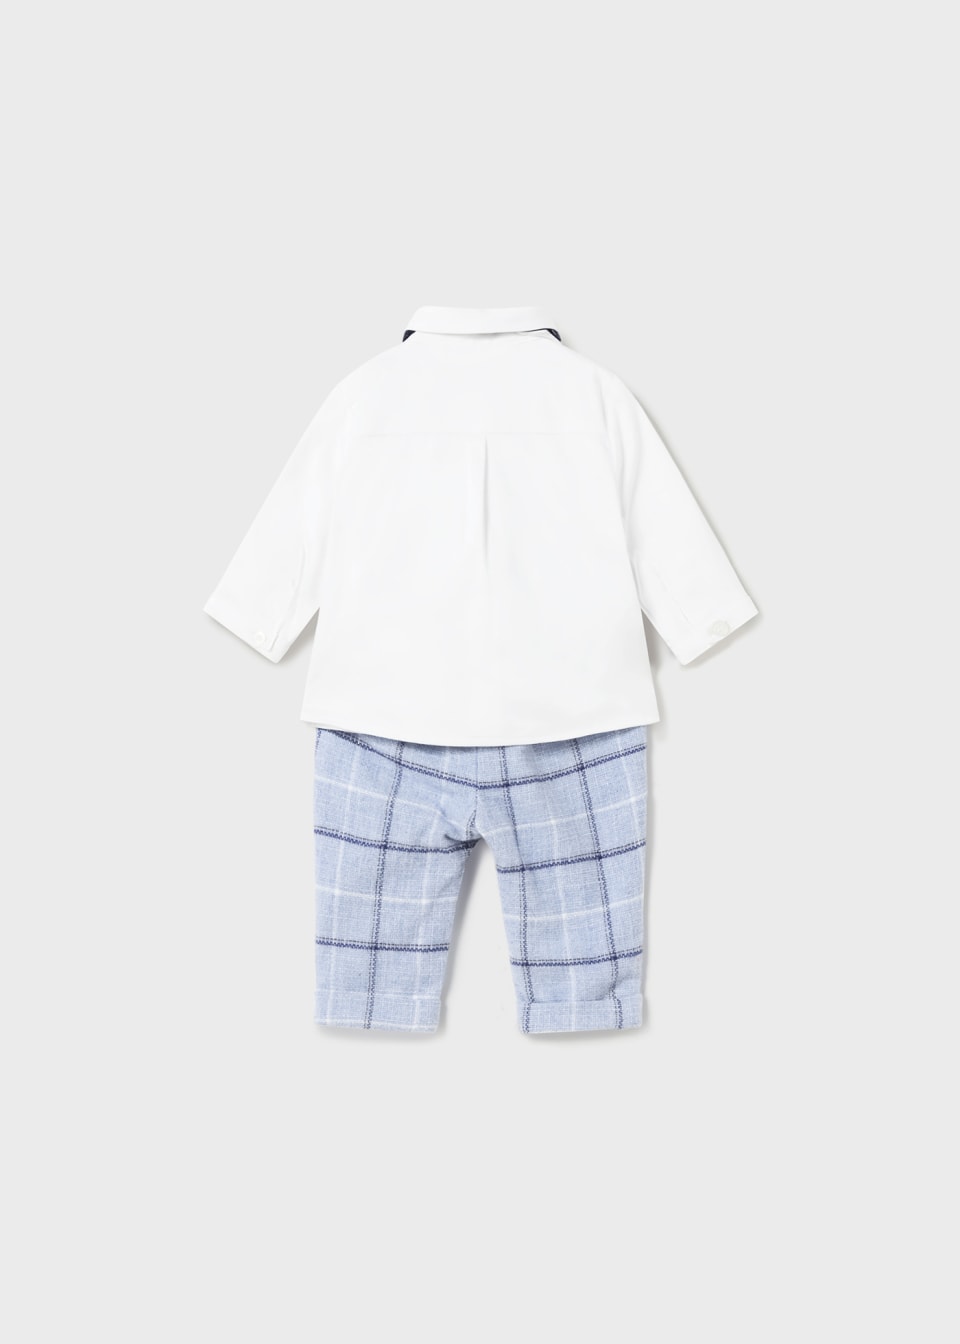 Baby Boy Vest/Shirt/Bowtie/Pants Set - The Village Retail